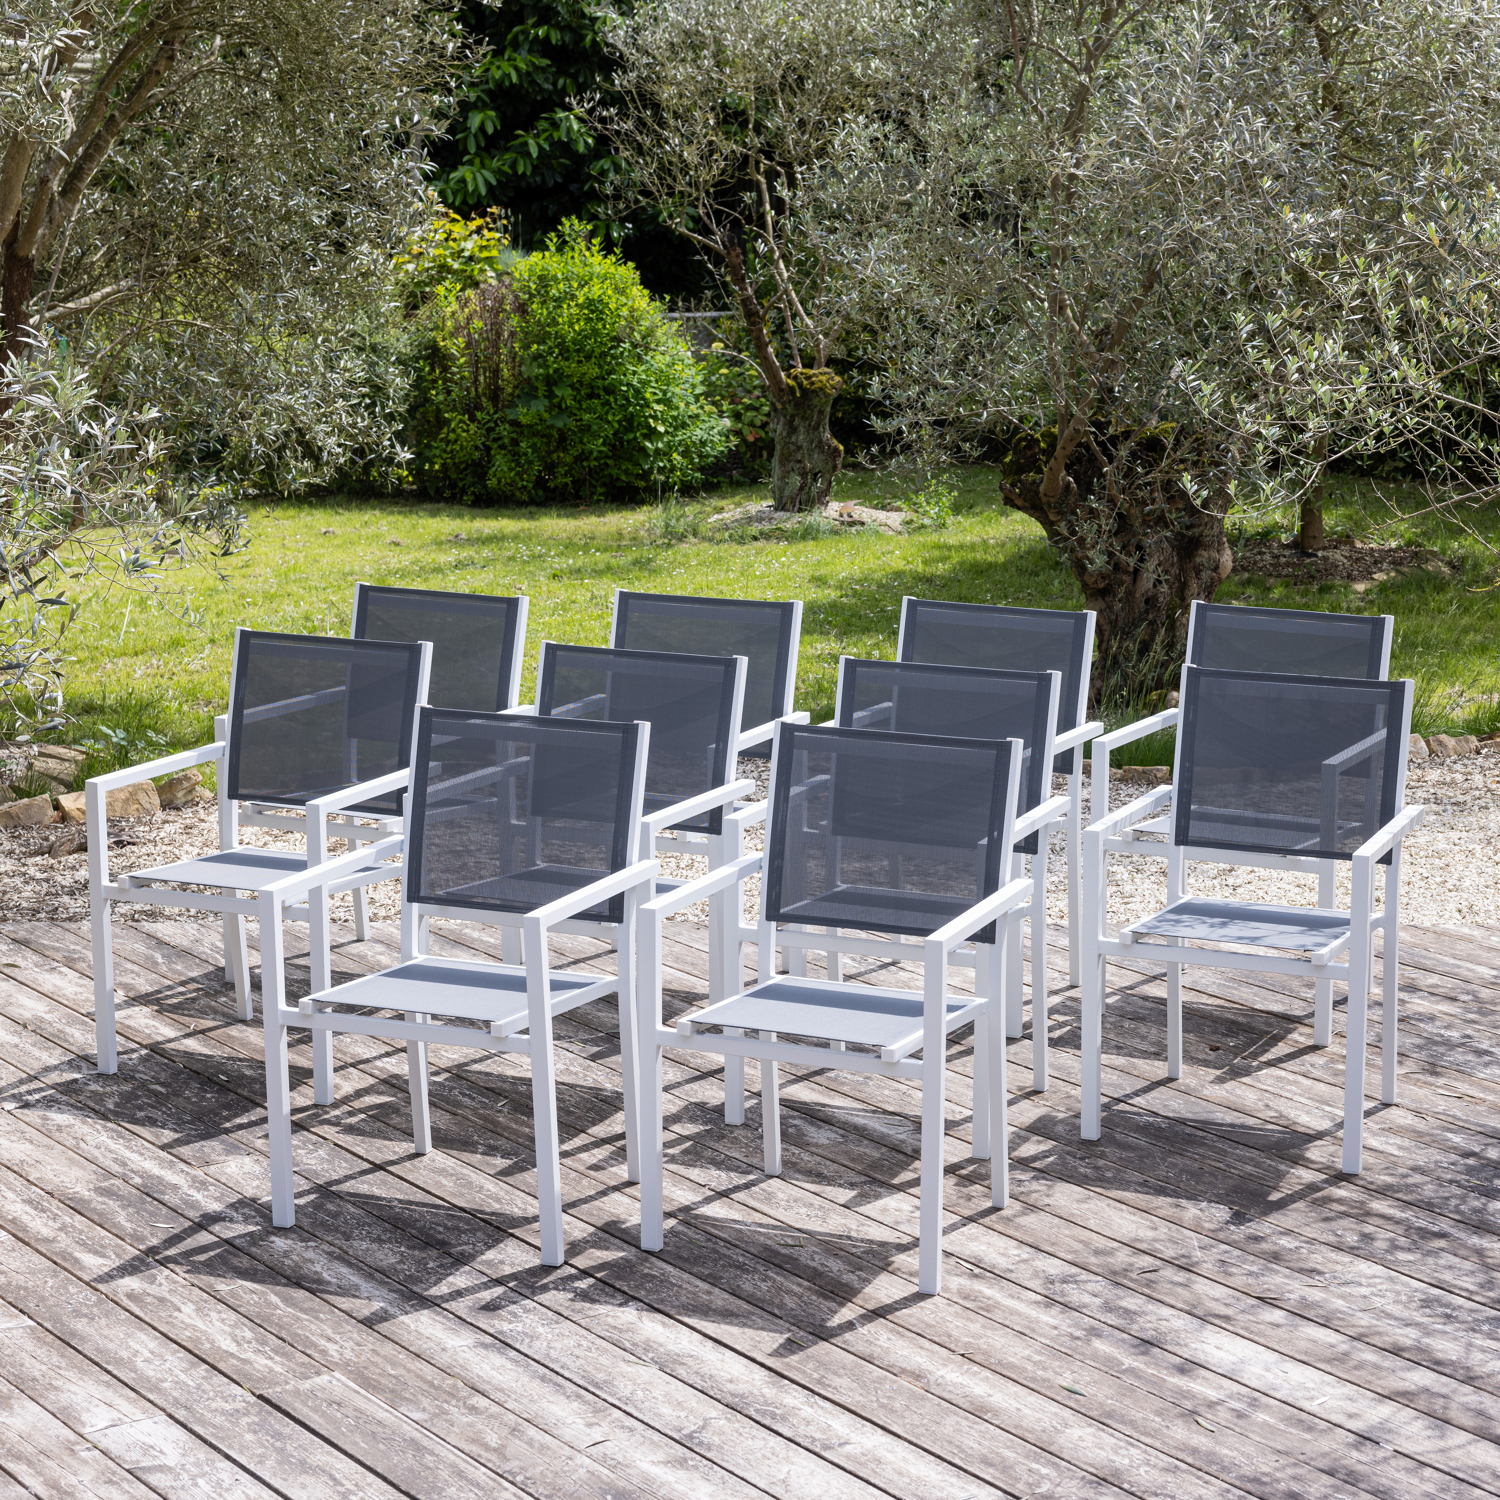 Lot de 10 chaises rembourrées en aluminium blanc - textilène gris